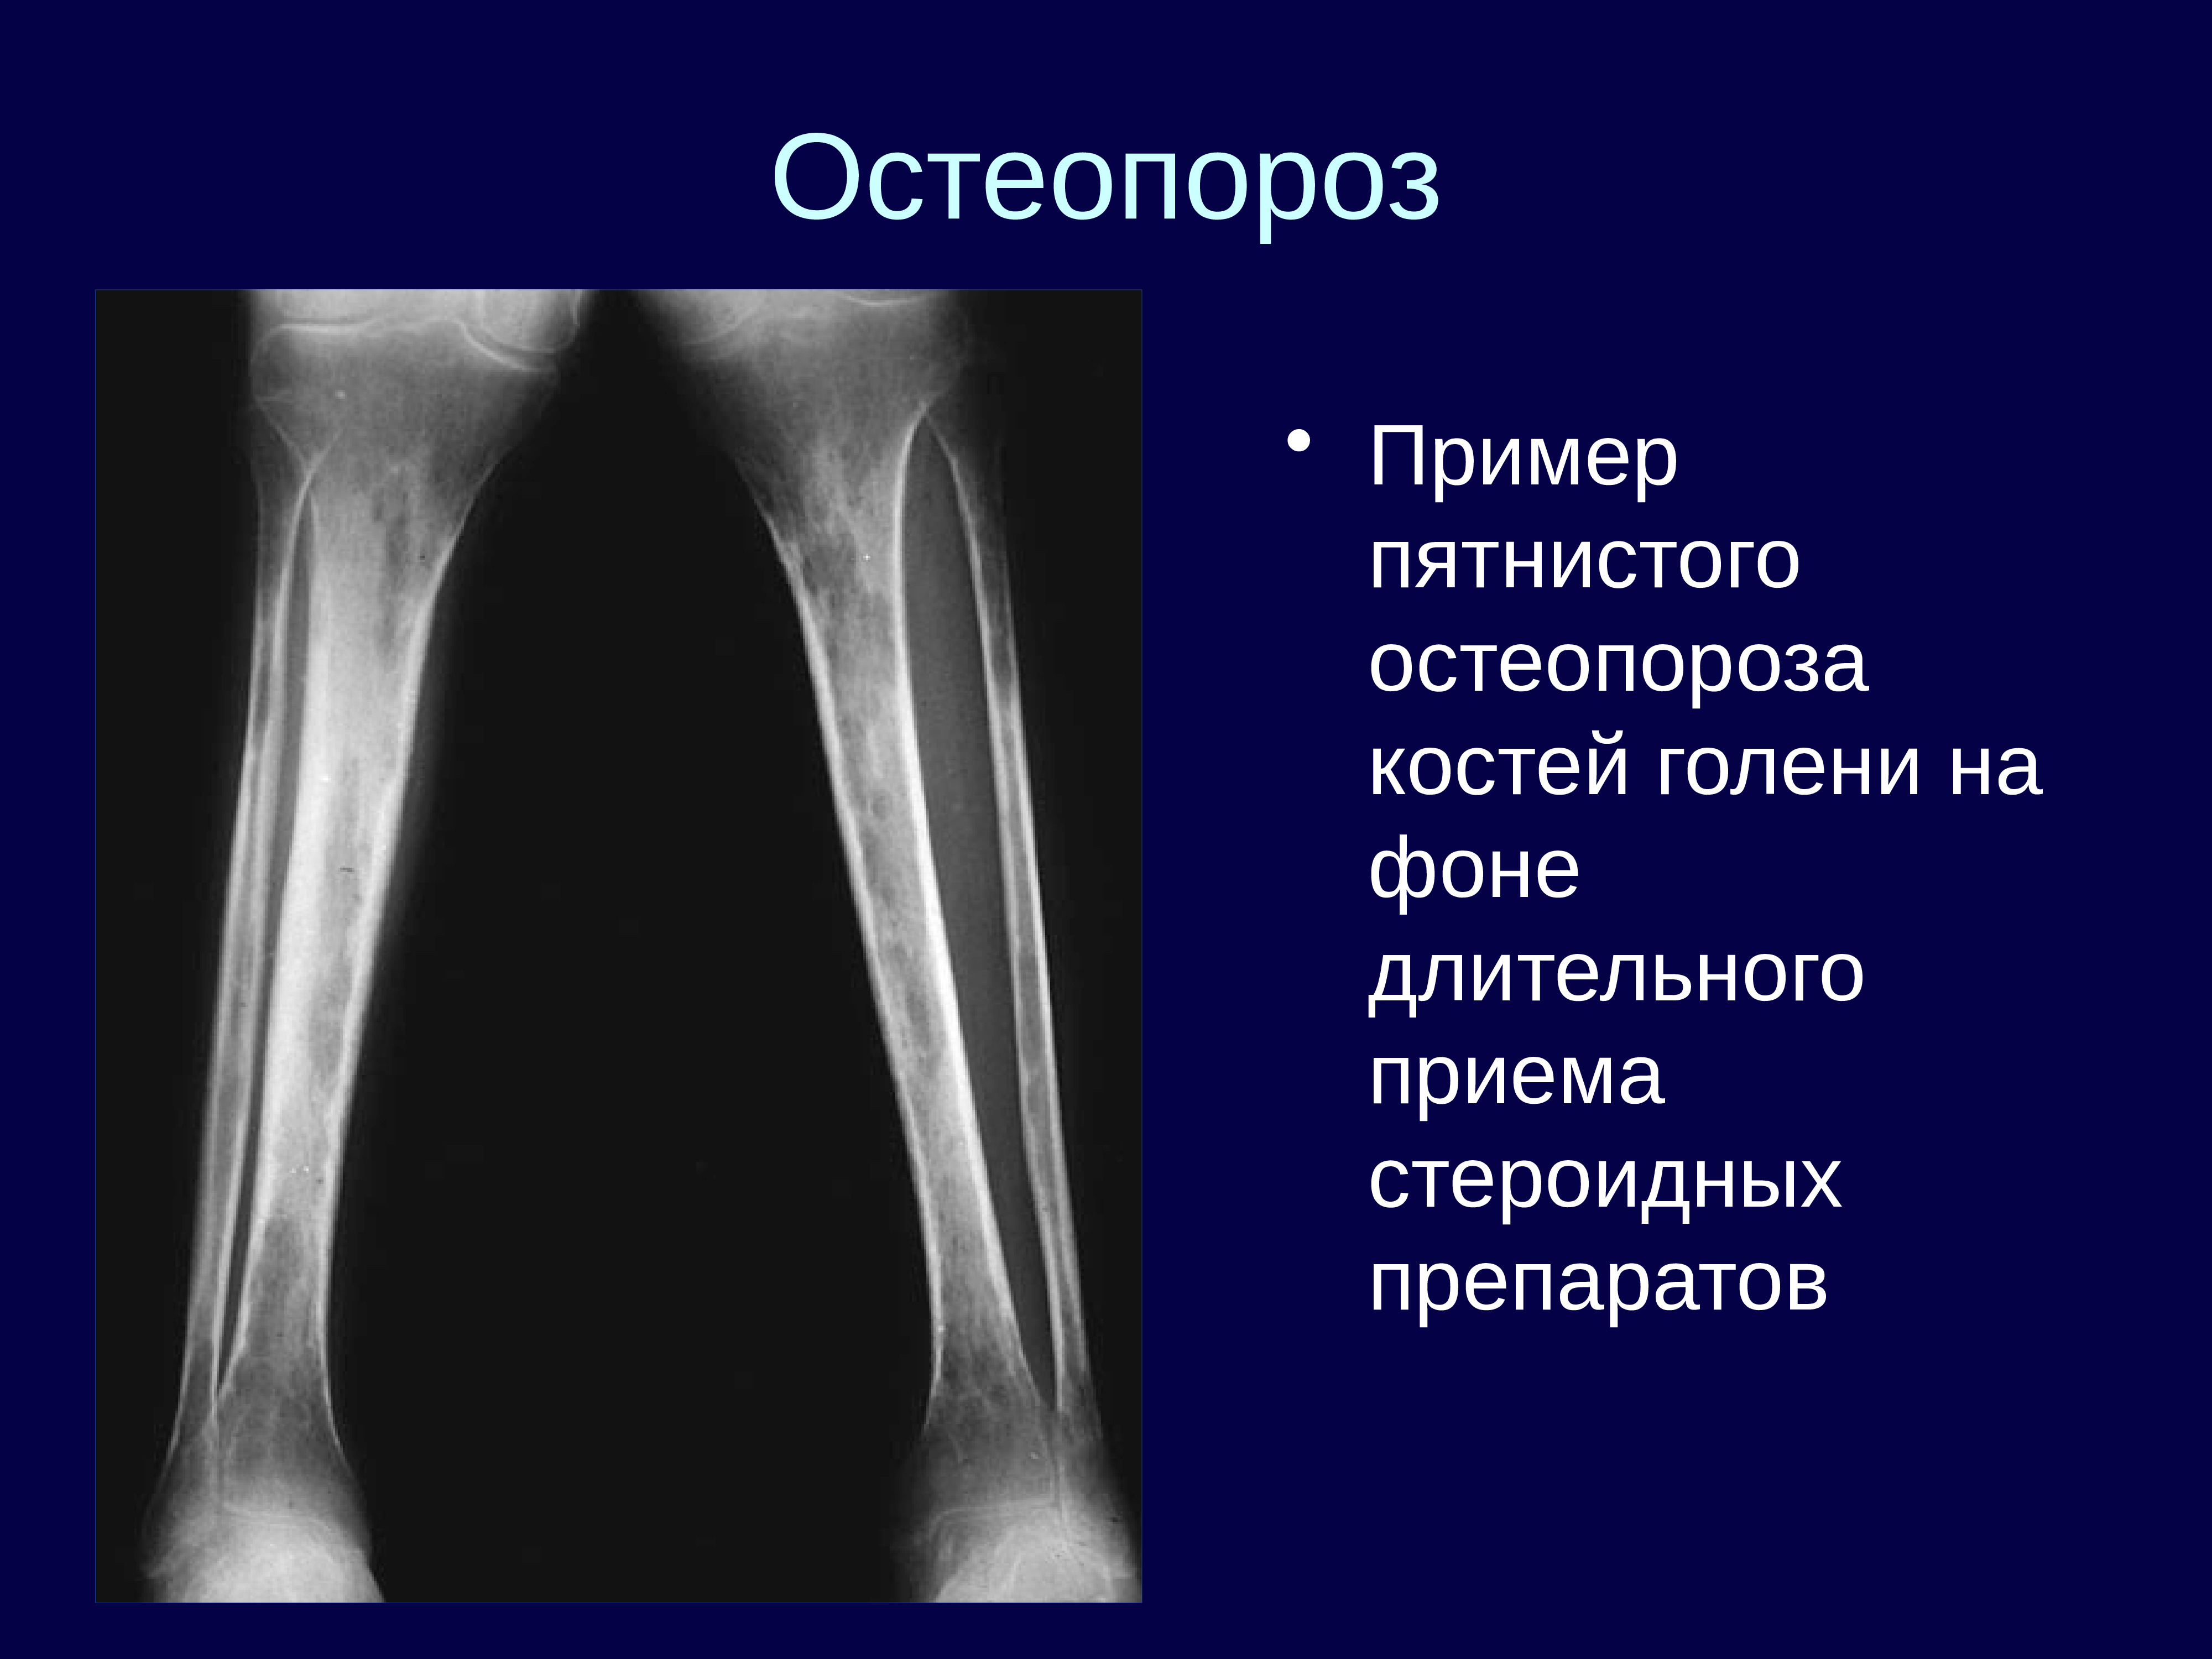 Очаговые изменения костей. Остеопороз лучевая диагностика костно-суставной системы. Остеопороз лучевых костей. Пятнистый остеопороз костей рентген. Посттравматический остеопороз бедренной кости.